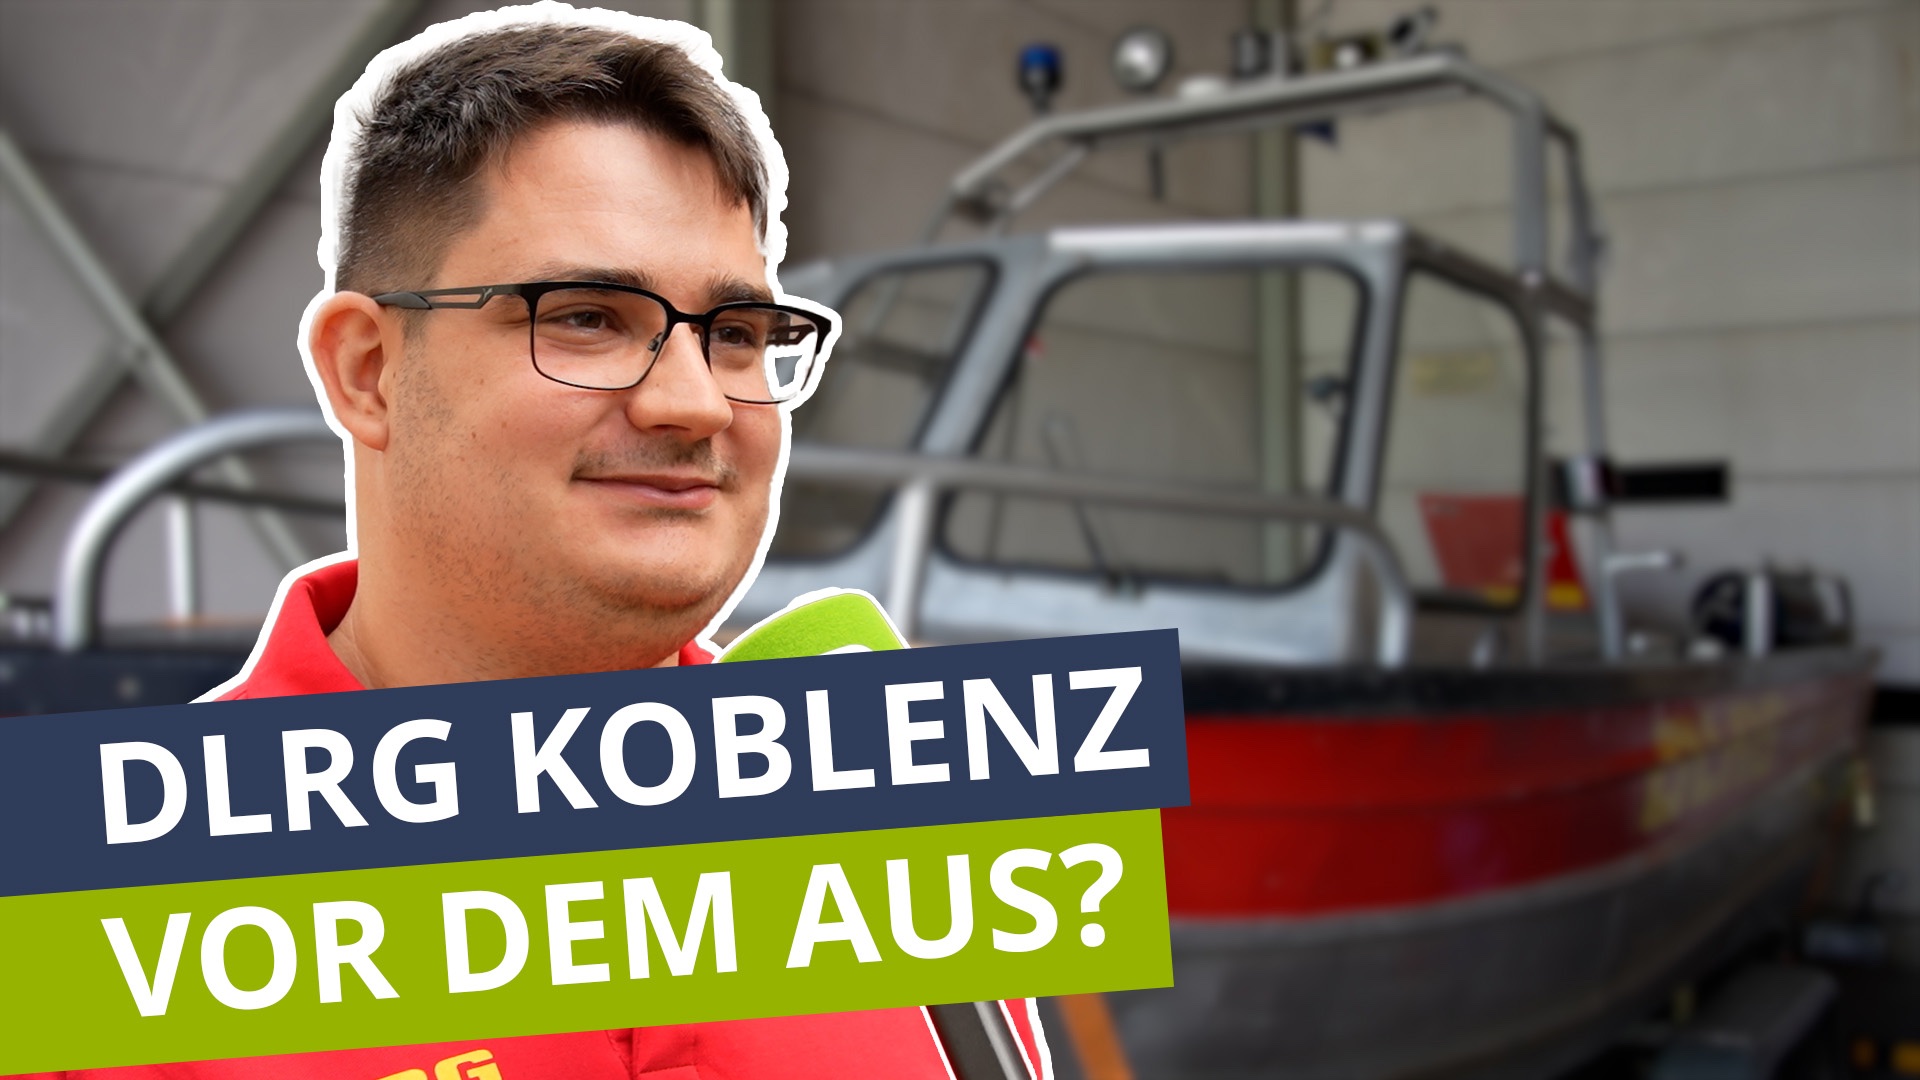 DLRG Koblenz vor dem Aus? Hiobsbotschaften plagen gemeinnützigen Verein